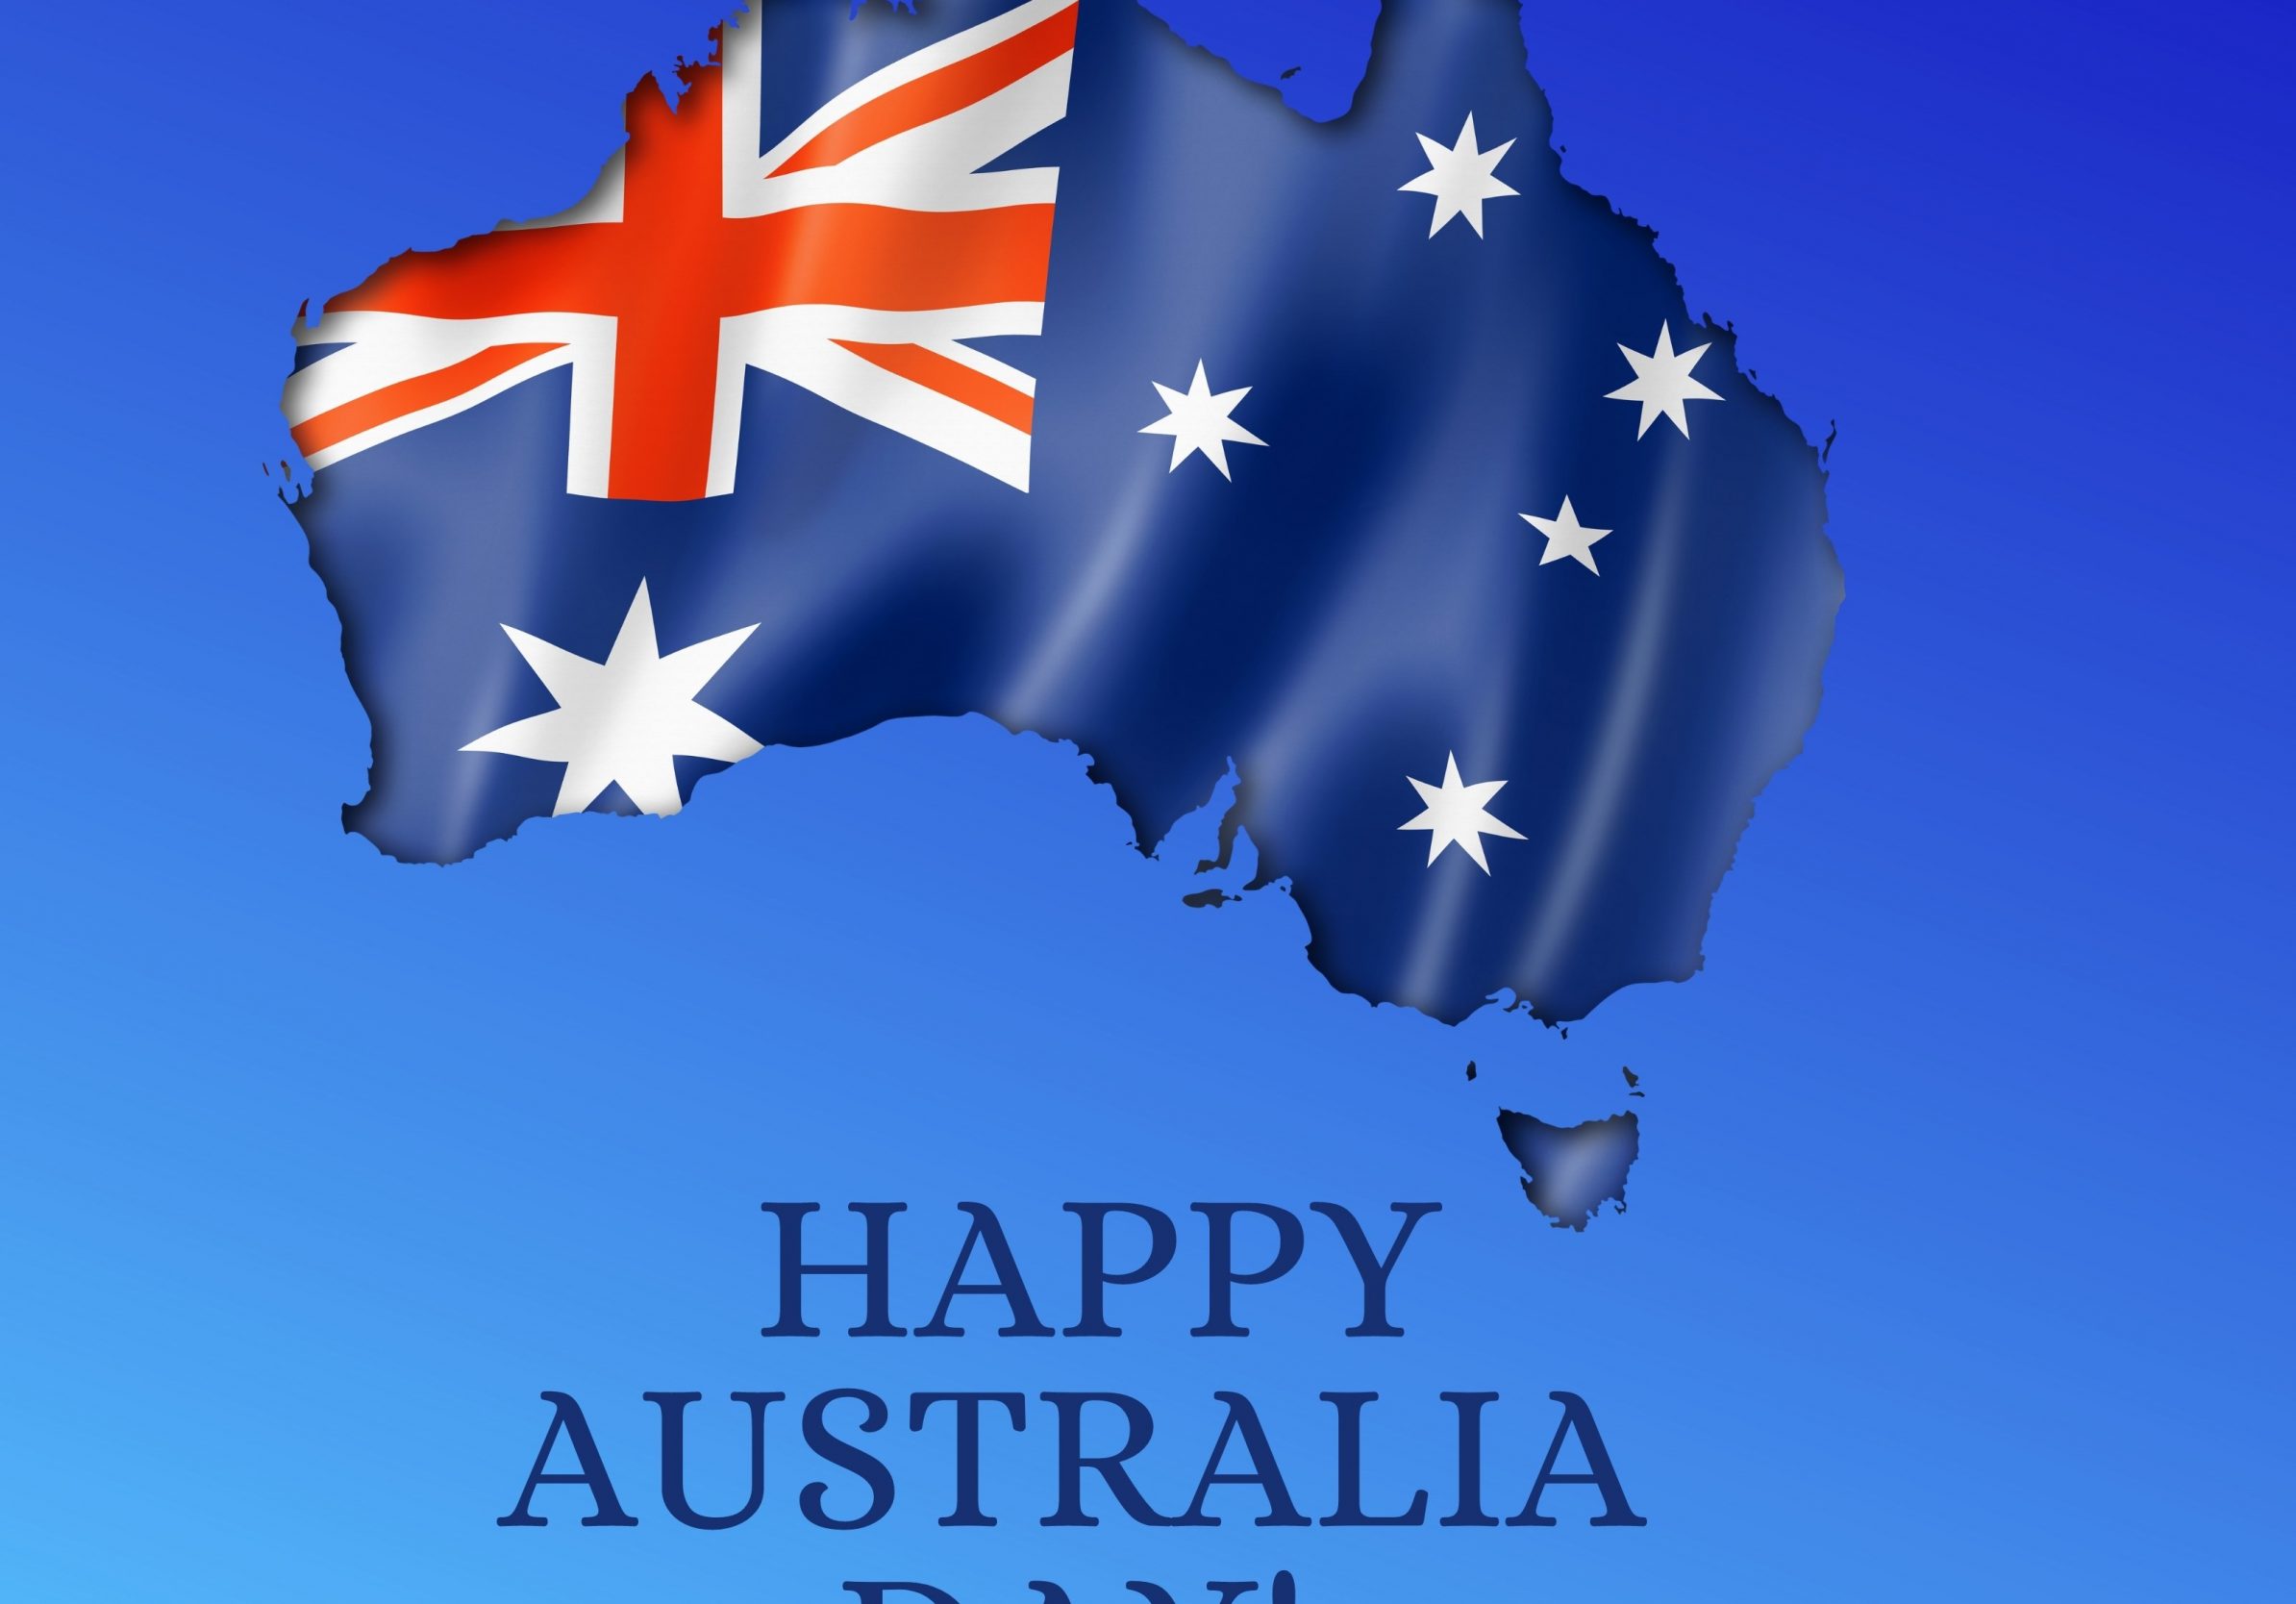 2388x1668 iPad Pro wallpapers Happy Australia Day iPad Wallpaper 2388x1668 pixels resolution